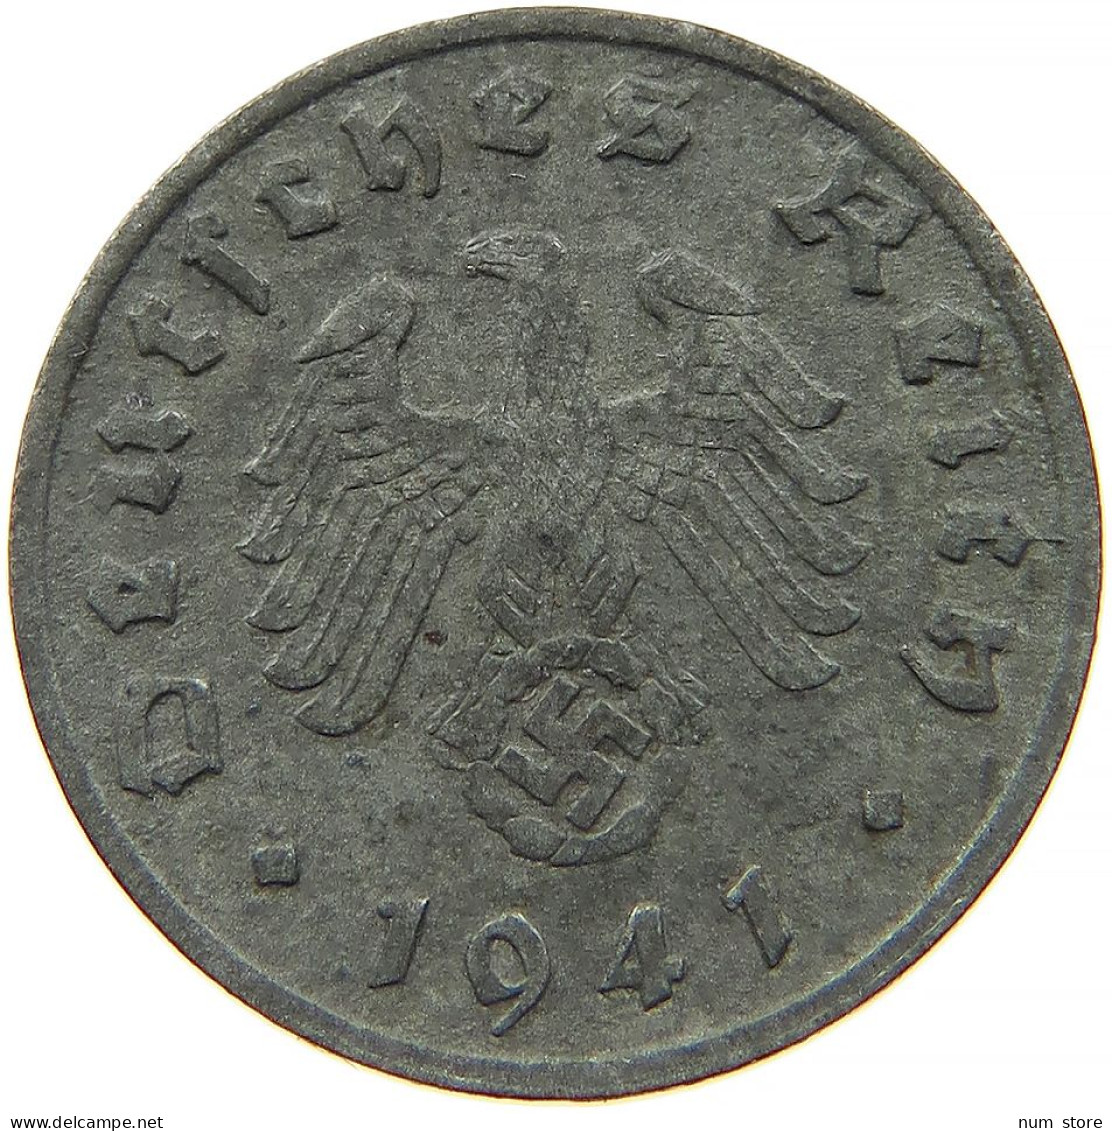 GERMANY 1 REICHSPFENNIG 1941 G #s091 1081 - 1 Reichspfennig